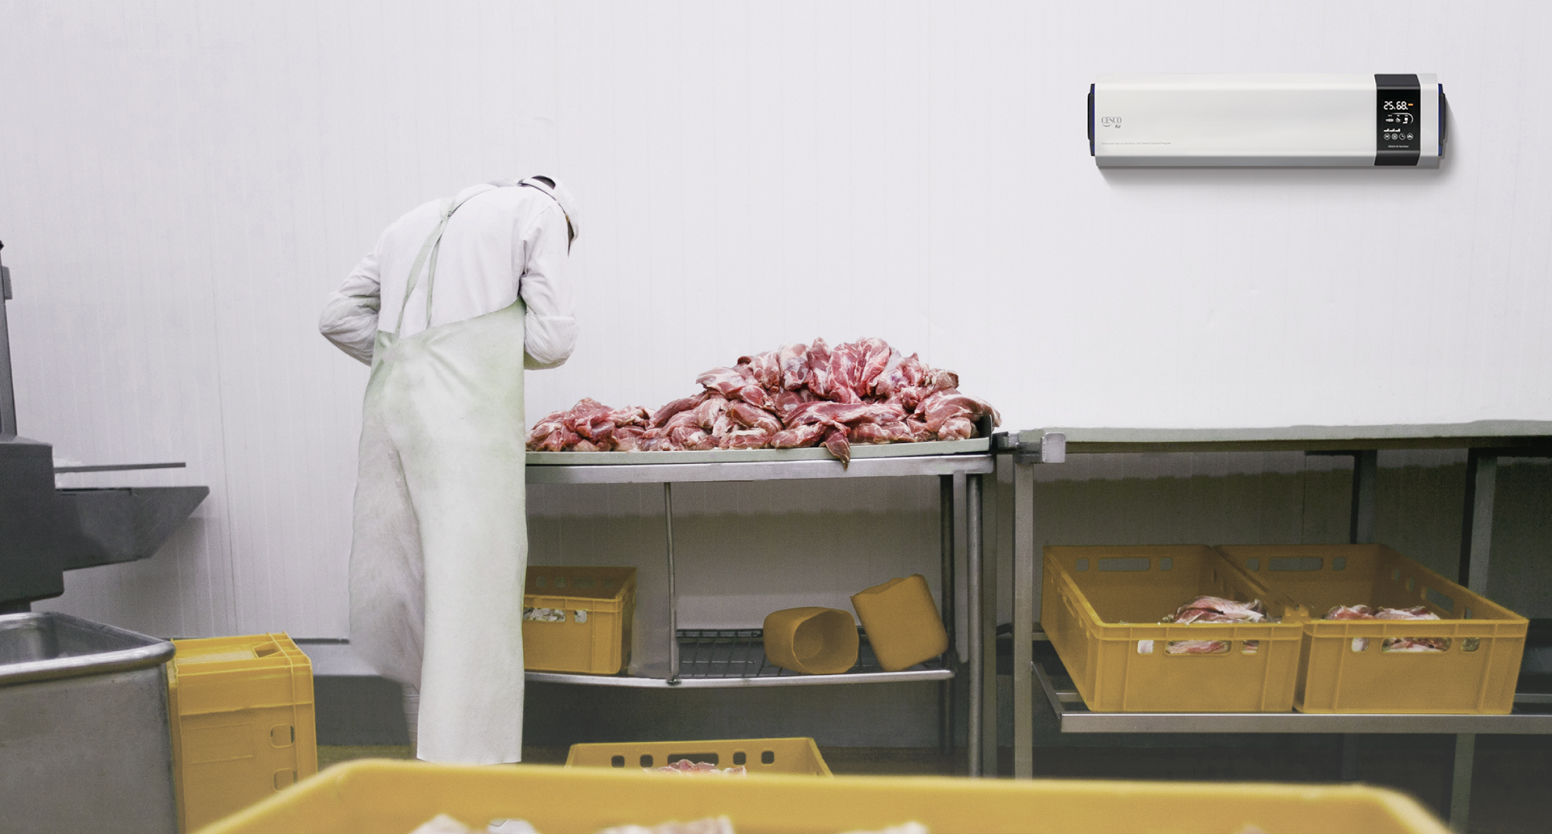 식품 제조 공장 내, 고기를 손질하고 있는 조리시설 위쪽 벽면에 바이러스 선제공격 시스템이 탑재된 세스코(CESCO)의 공기살균기 제품이 설치되어 있습니다.